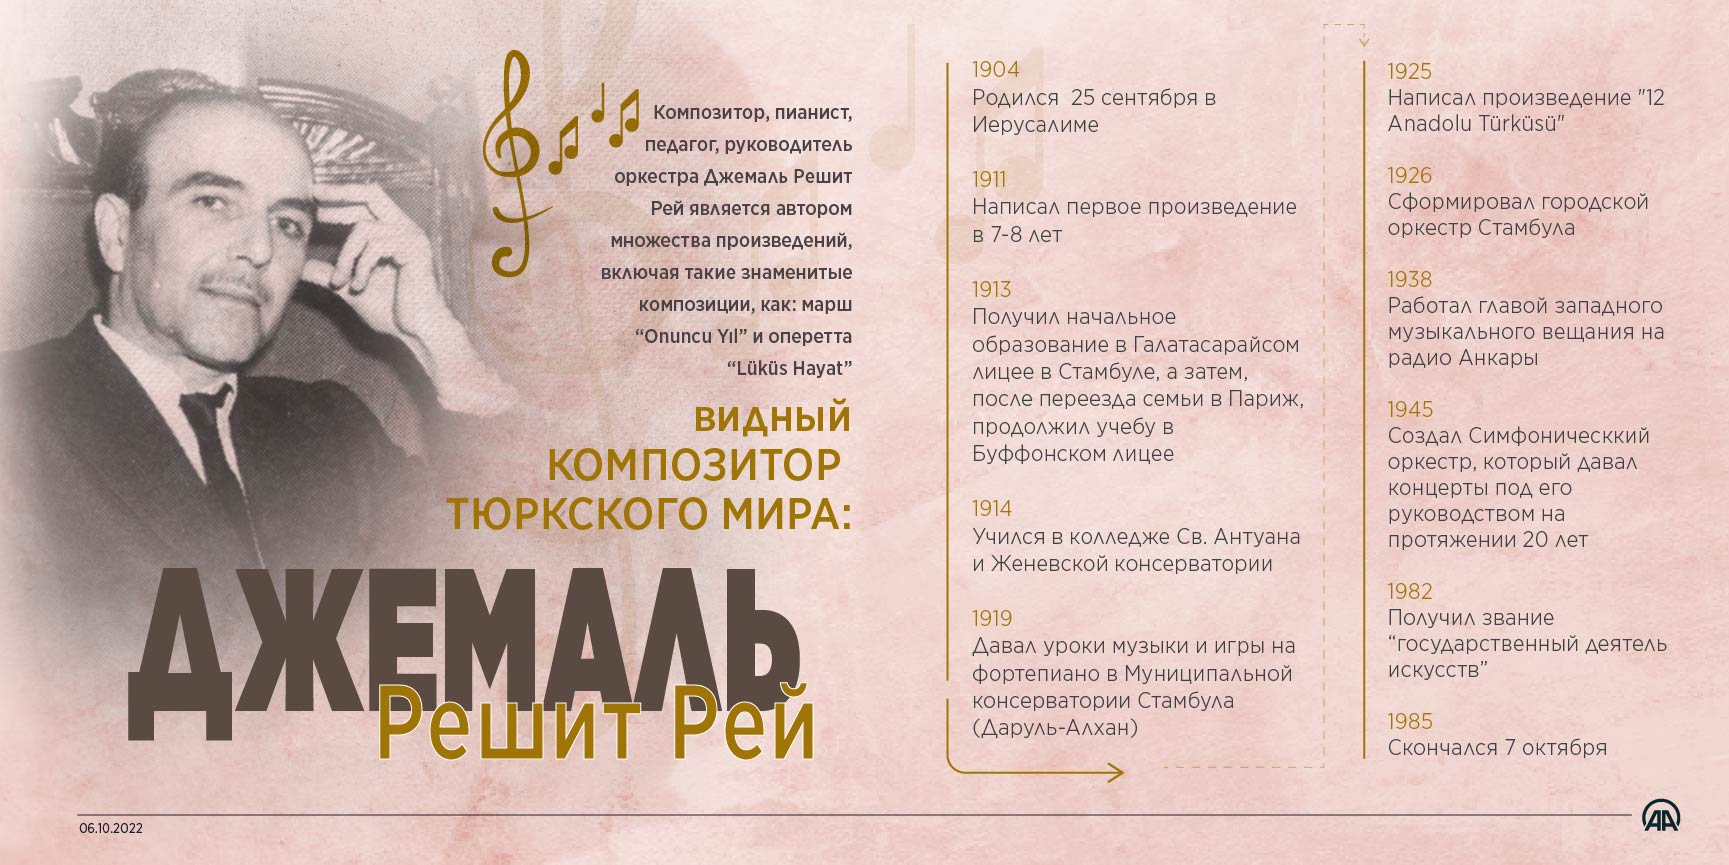 Джемаль Решит Рей: Видный композитор тюркского мира